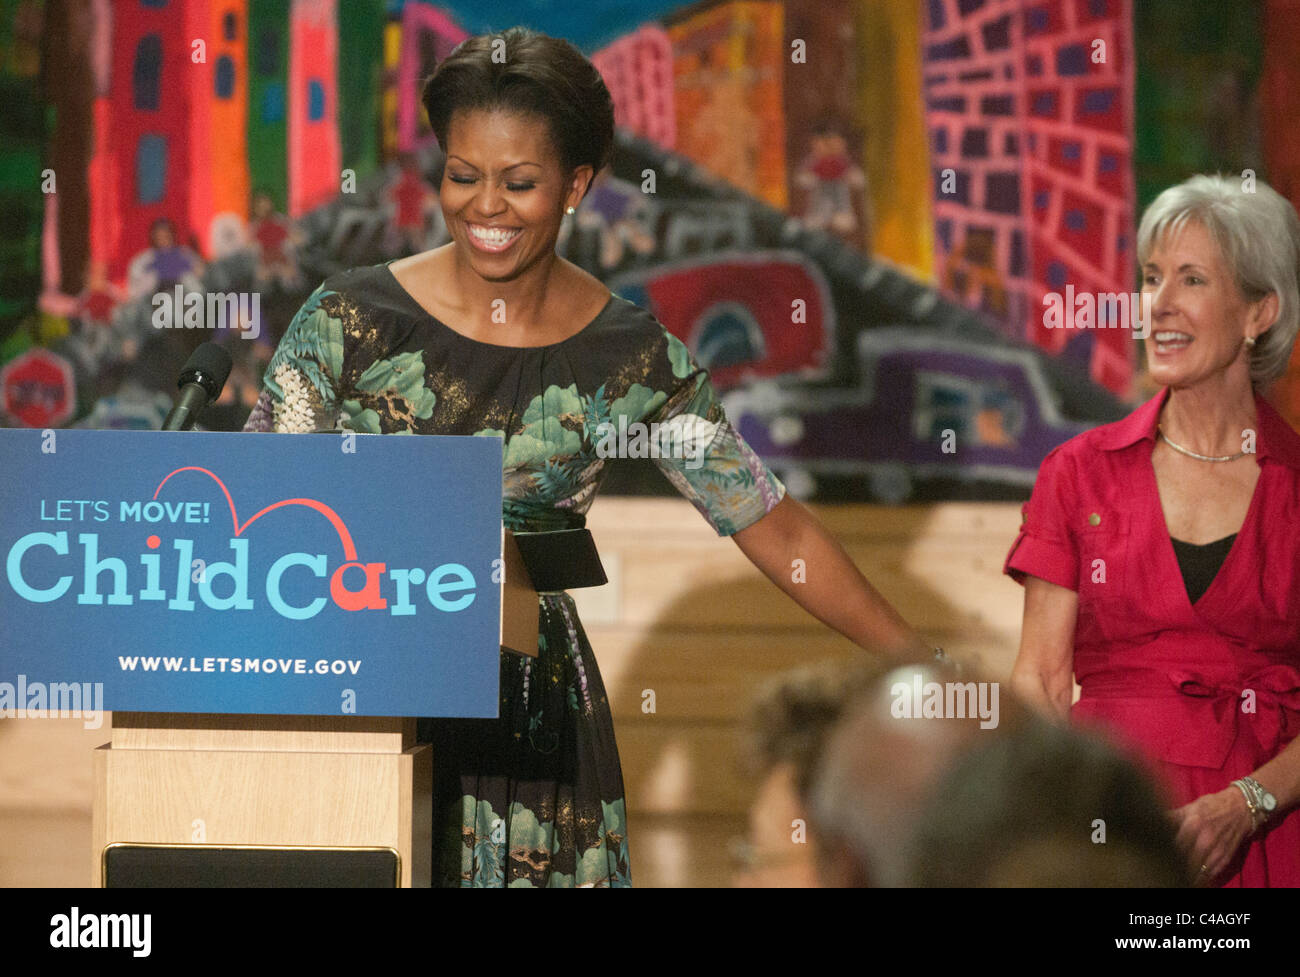 La Première Dame Michelle Obama dévoilé vous permet de bouger ! Les soins aux enfants, un nouvel effort pour travailler avec les fournisseurs de services de garderie à encourager des ea Banque D'Images